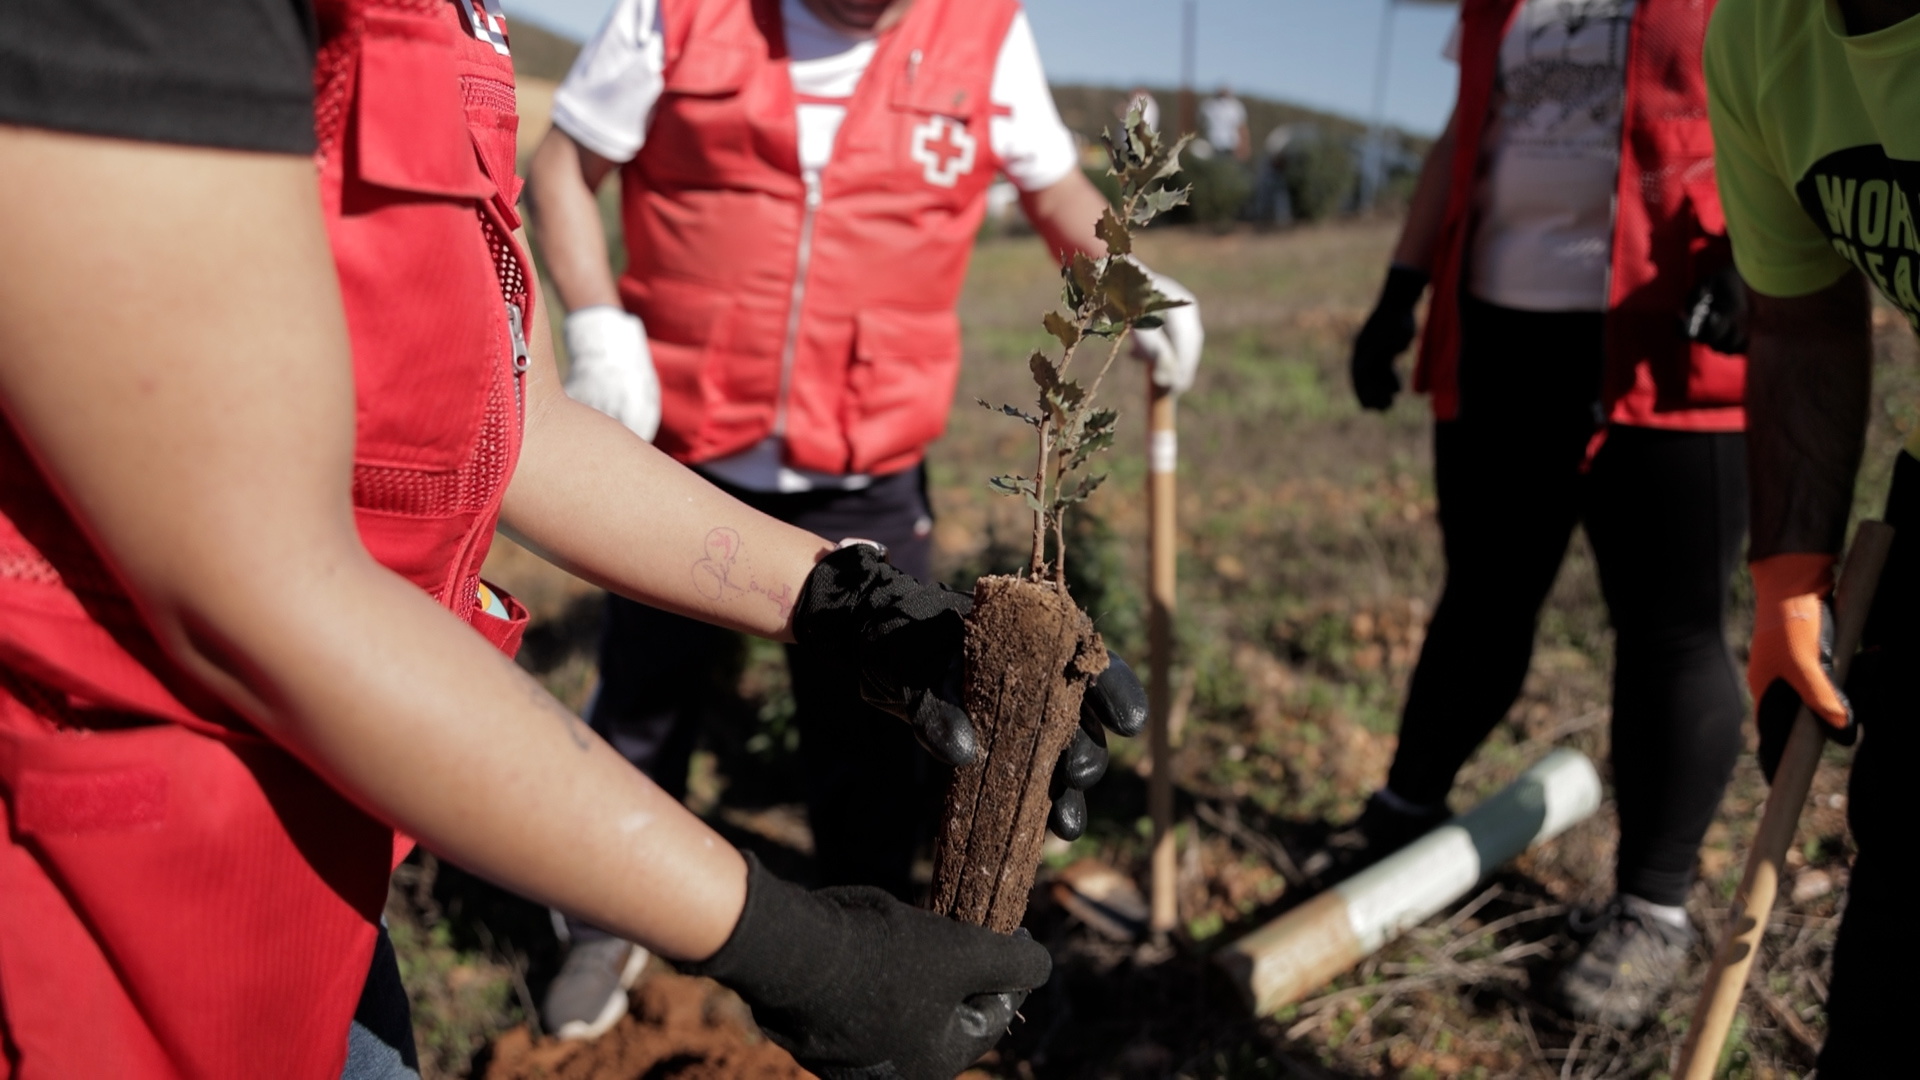 Cruz Roja advierte: España entra en déficit ecológico el 20 de mayo, actuemos para salvar el planeta